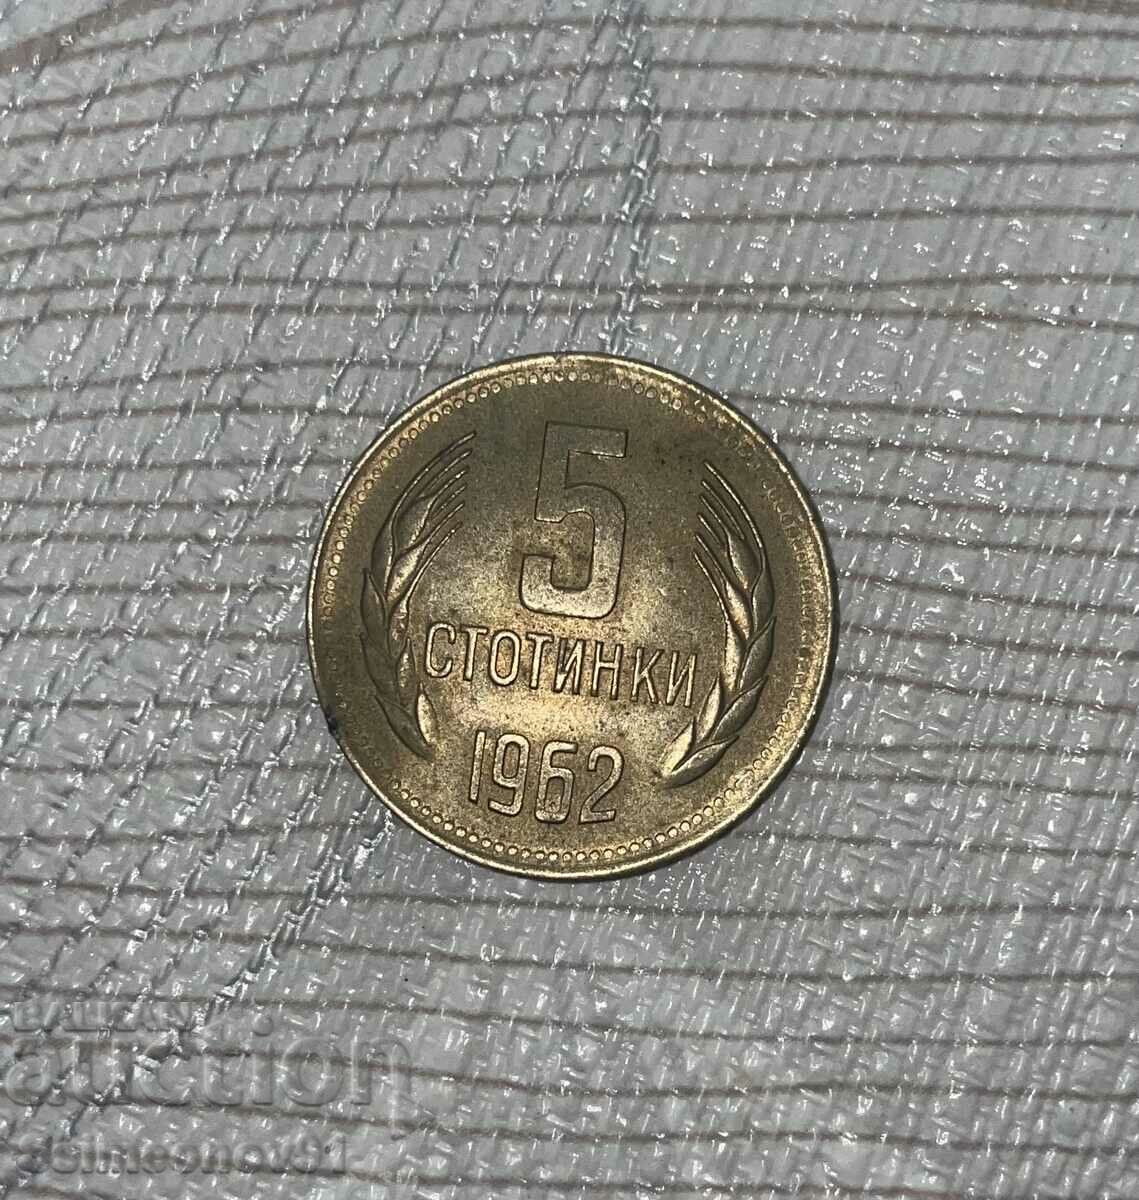 Monedă de 5 cenți din 1962.